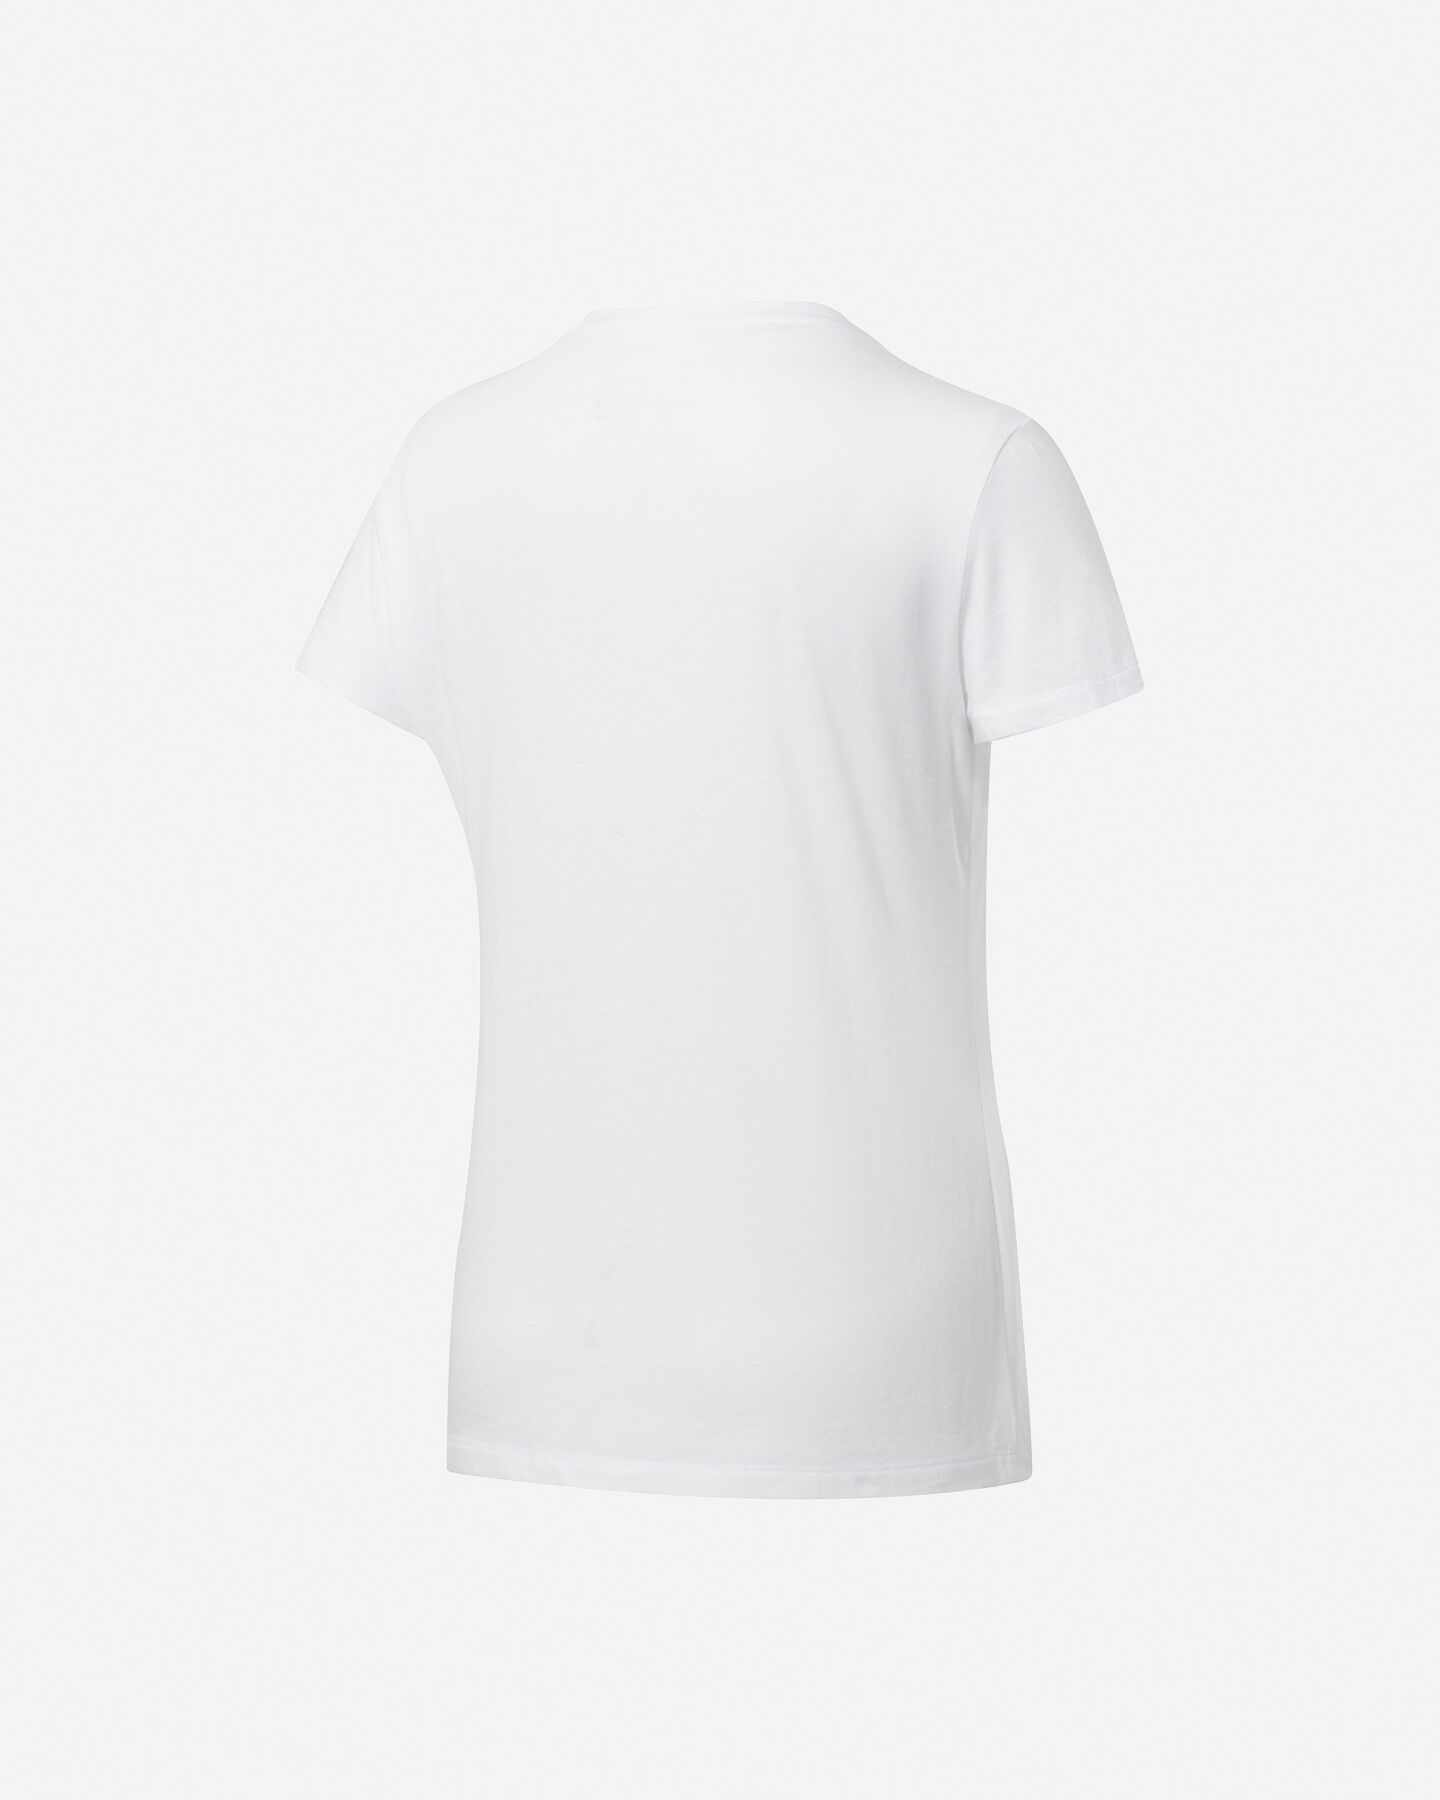  T-Shirt REEBOK GRAPHIC VECTOR W S5214594|UNI|L scatto 1